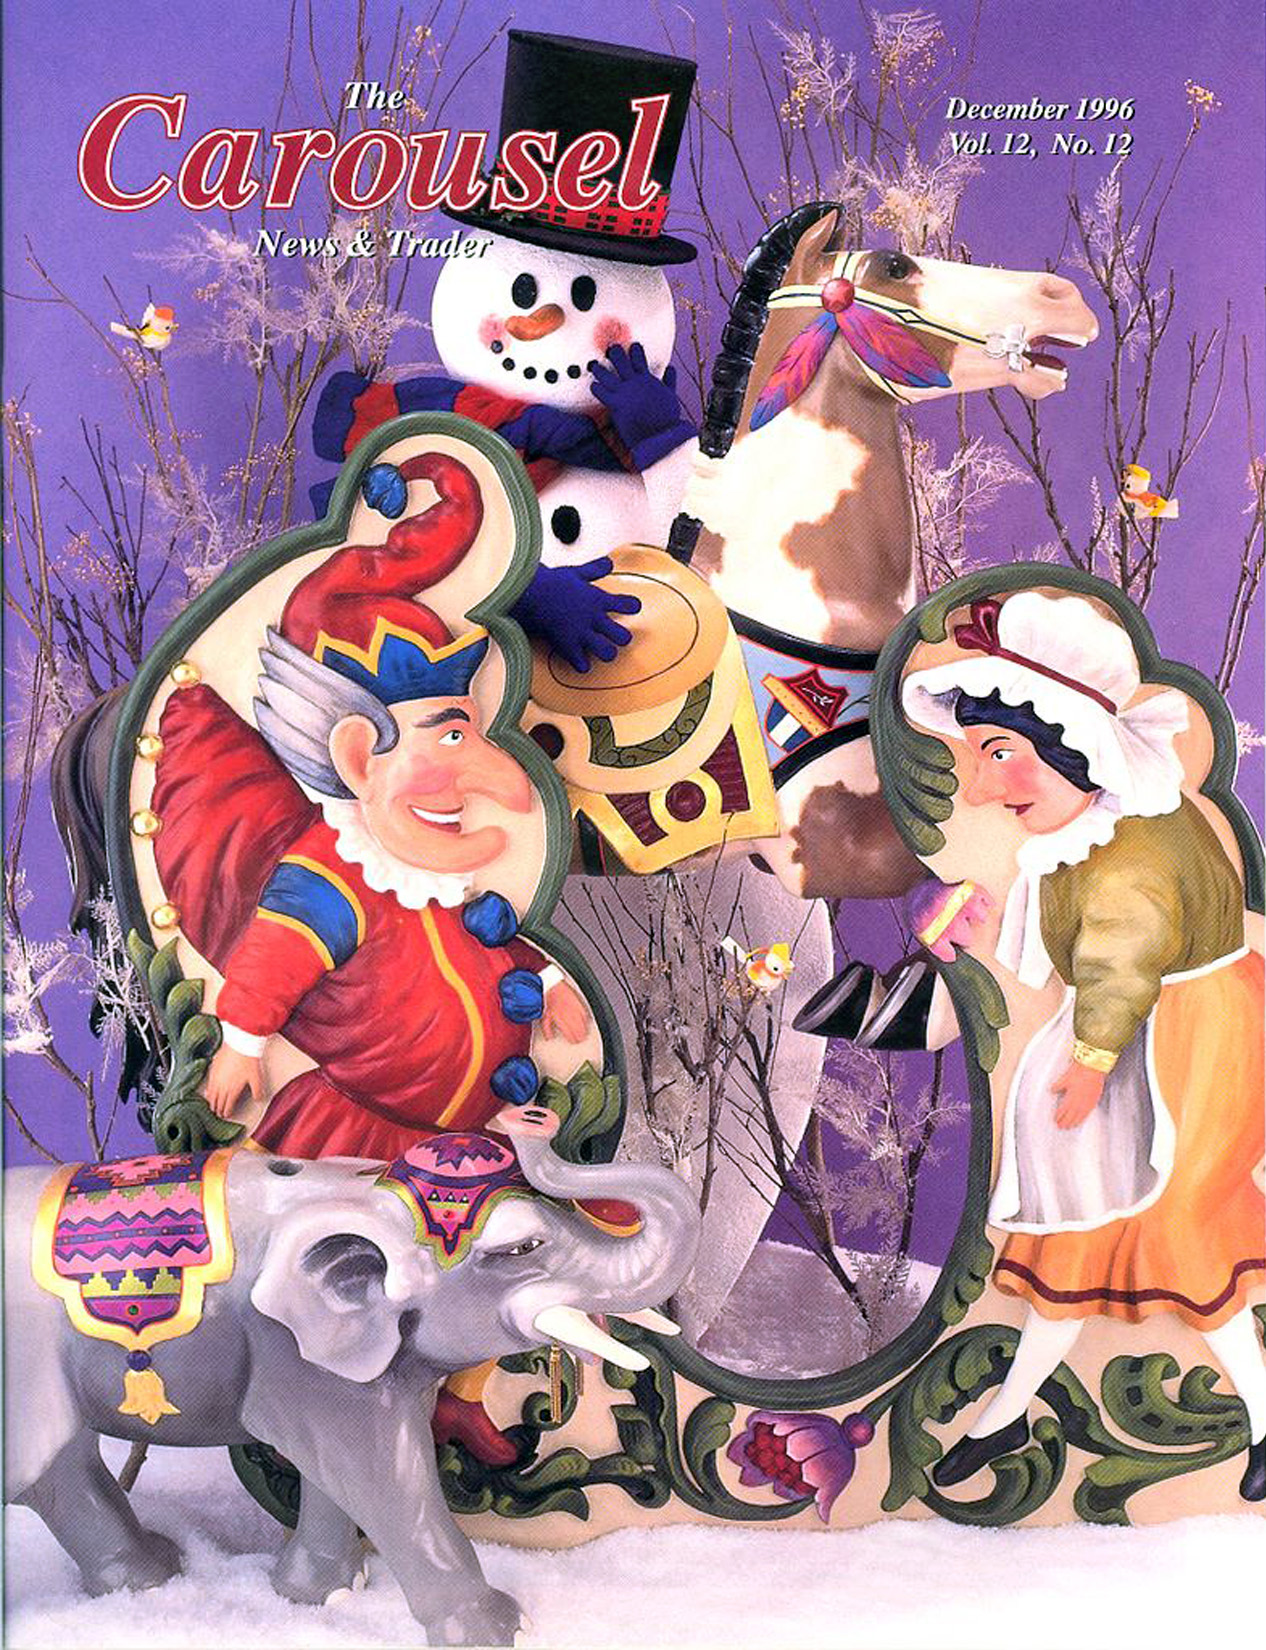 Issue No. 12, Vol. 12 – December 1996